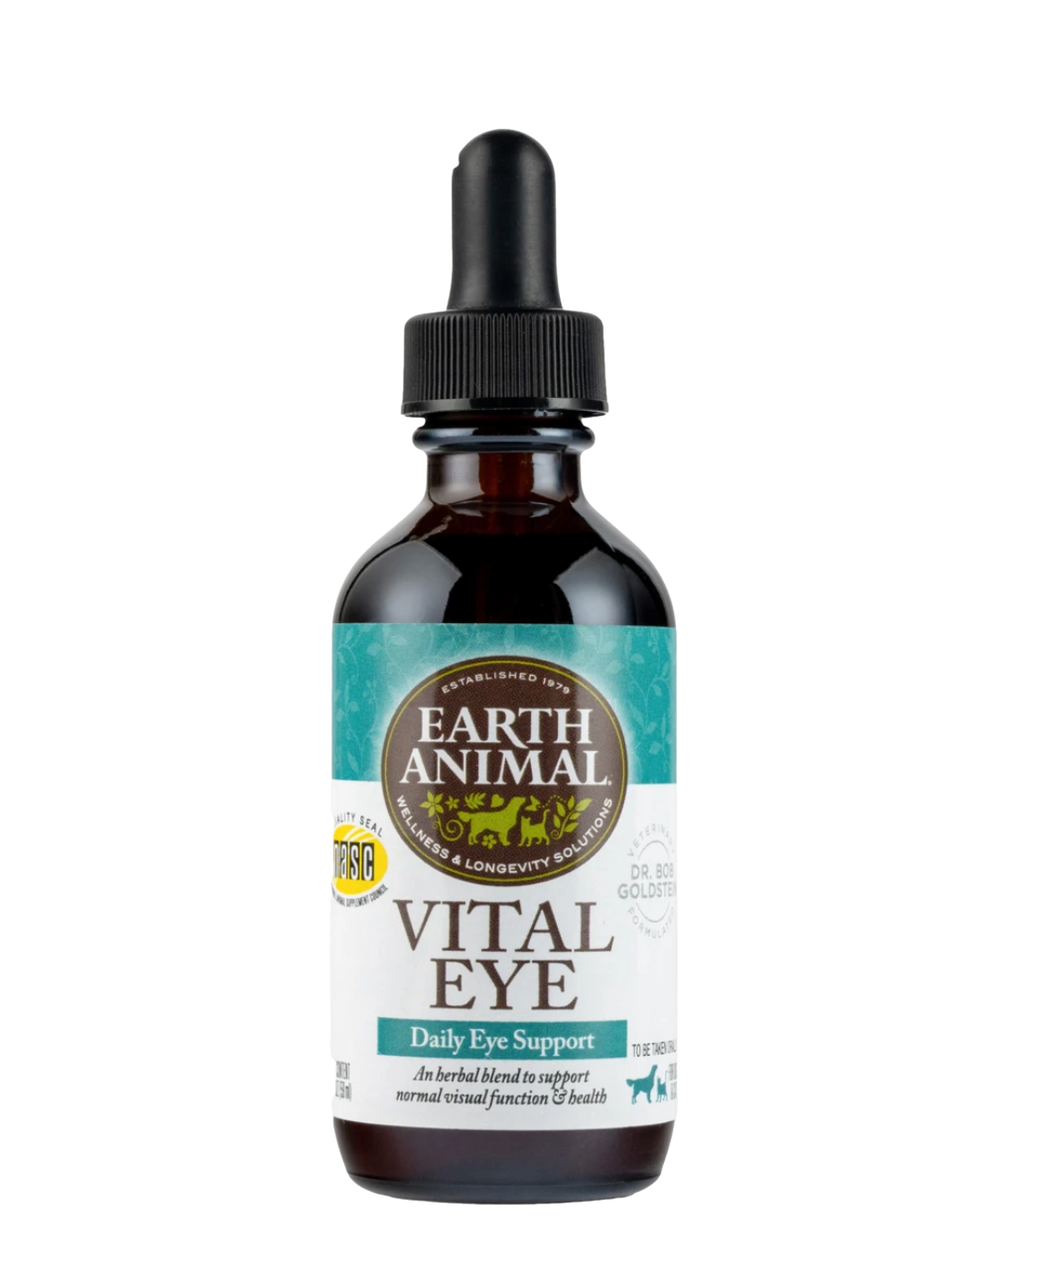 Earth Animal Organic Herbal Remedy - Vital Eye 2 fl oz